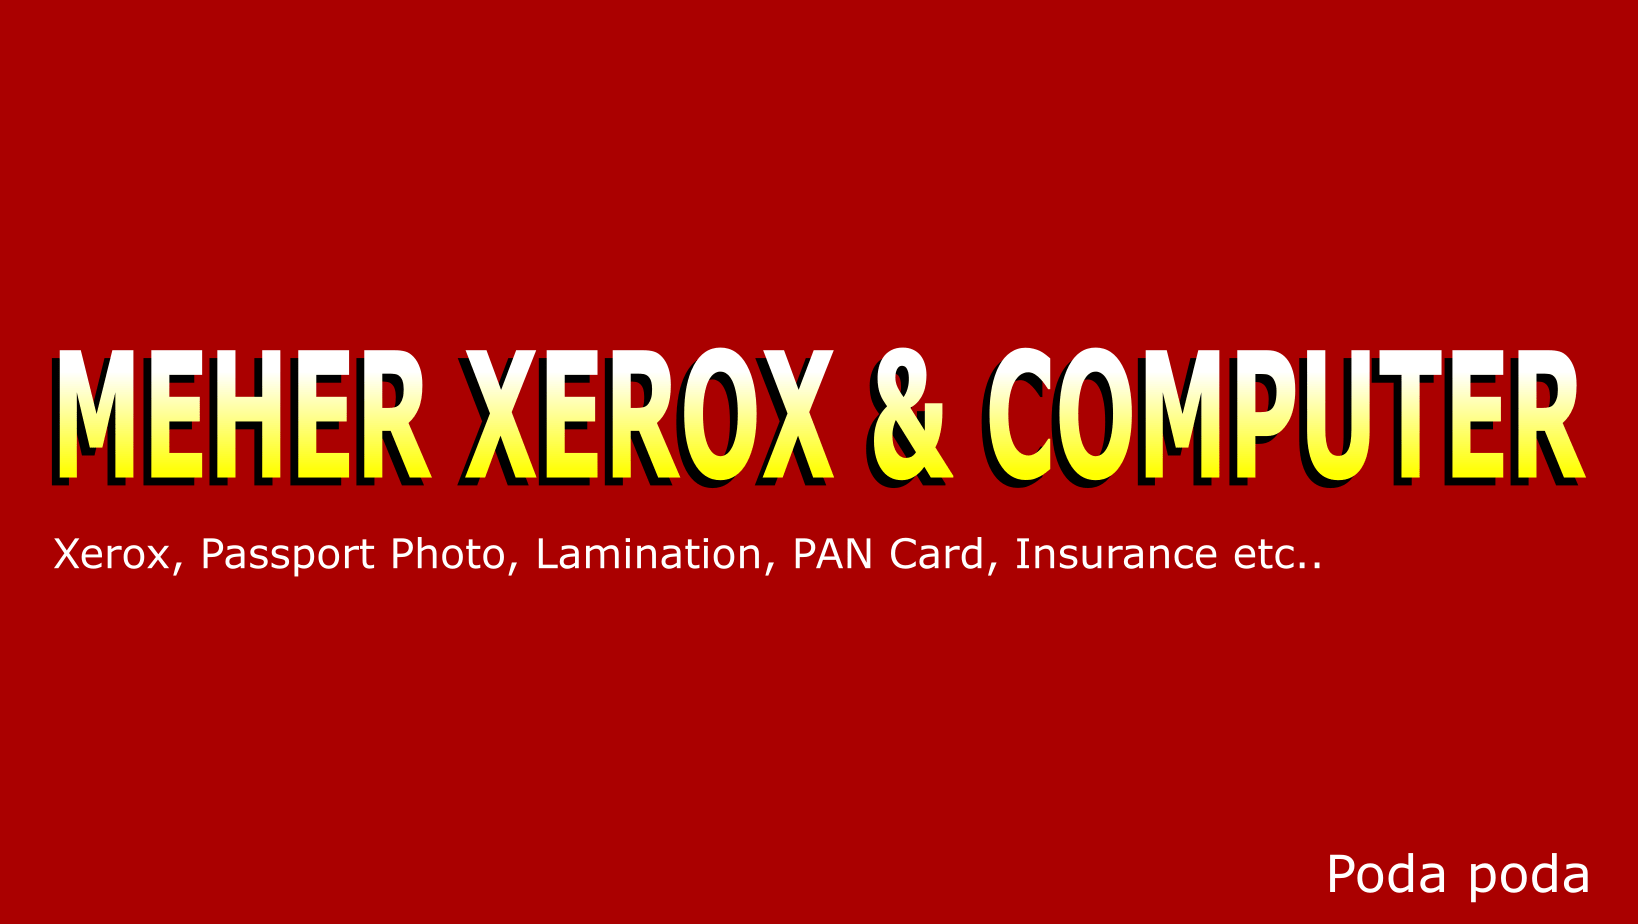 Meher Xerox & computer